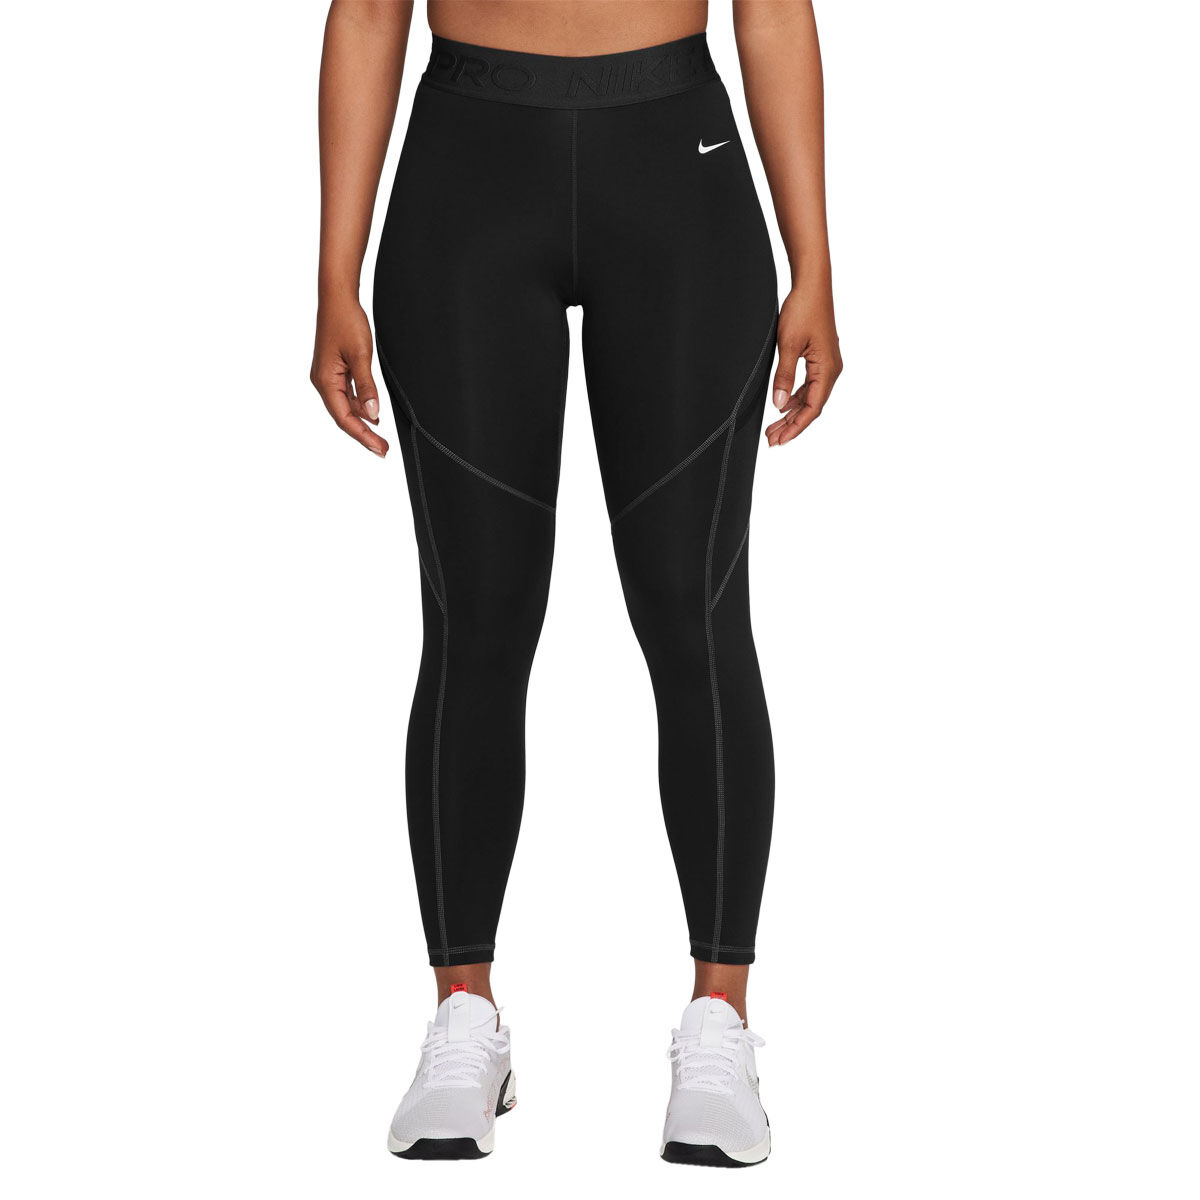 Nike Black Dri Fit Leggings XS - Reluv Clothing Australia